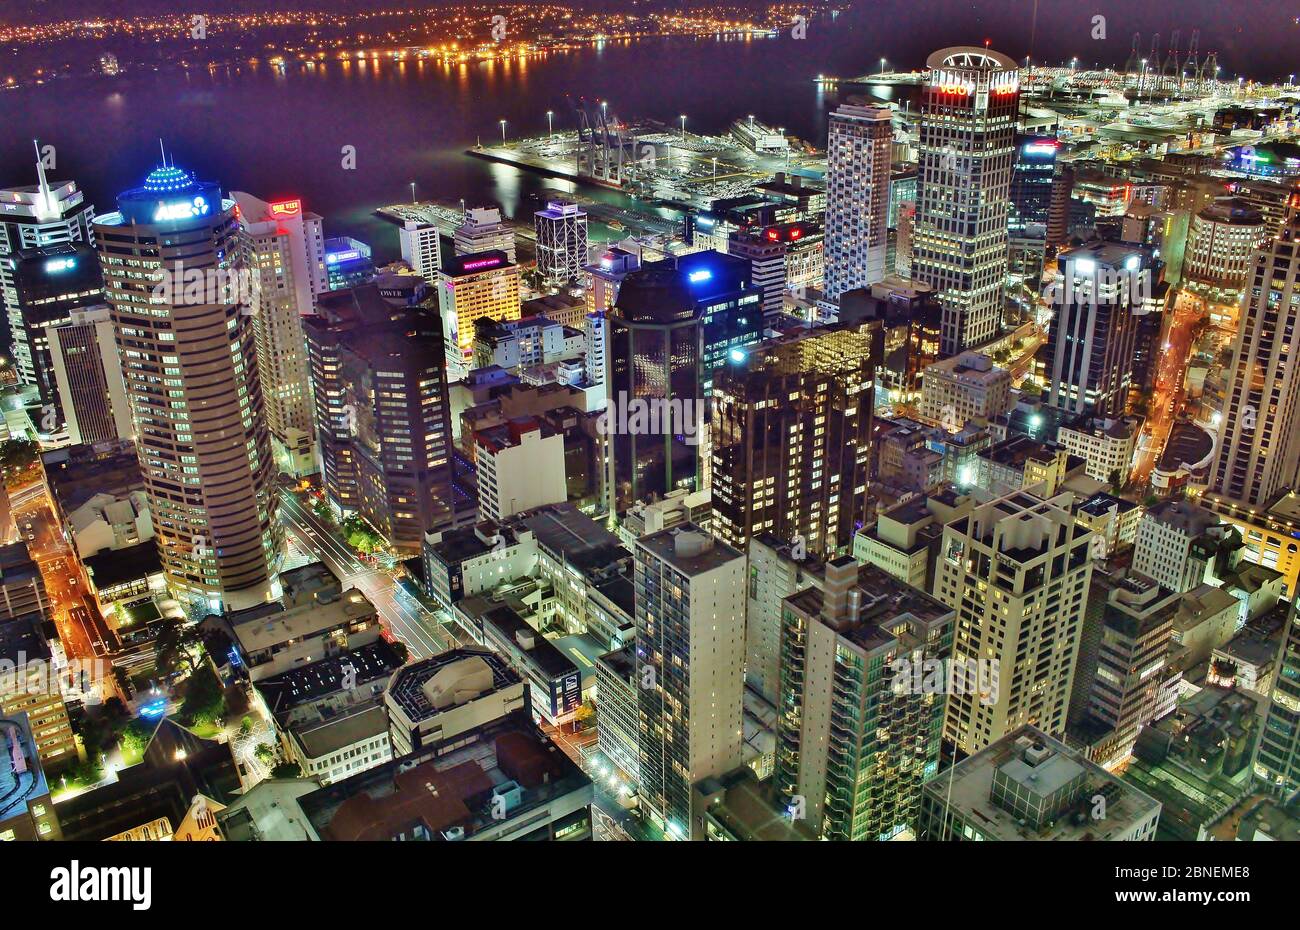 Atemberaubende Aufnahme des Stadtzentrums von Auckland in Neuseeland bei Nacht von oben. Foto vom Sky Tower. Stockfoto